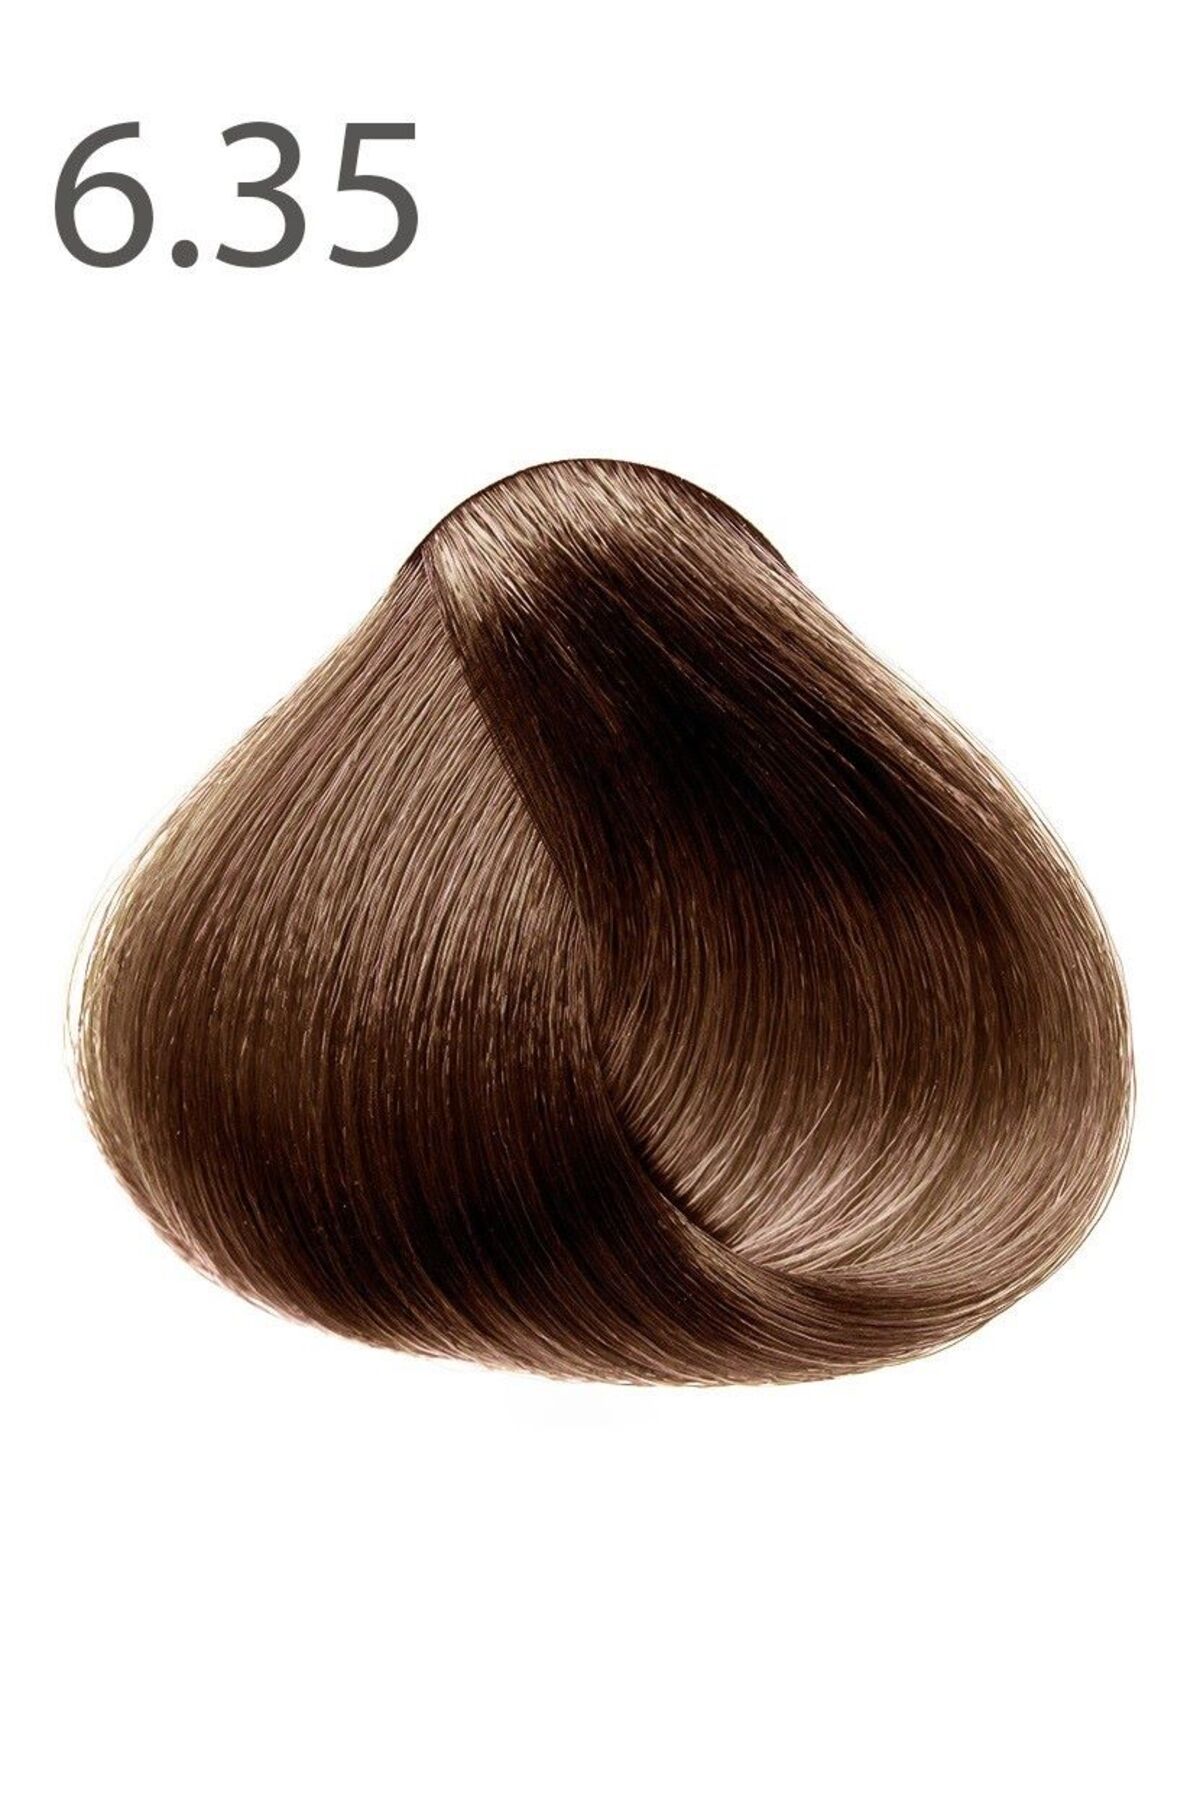 Faberlic SALONCARE Serisi Kalıcı Saç Boyası - Çikolatalı Mousse 6.35*8252